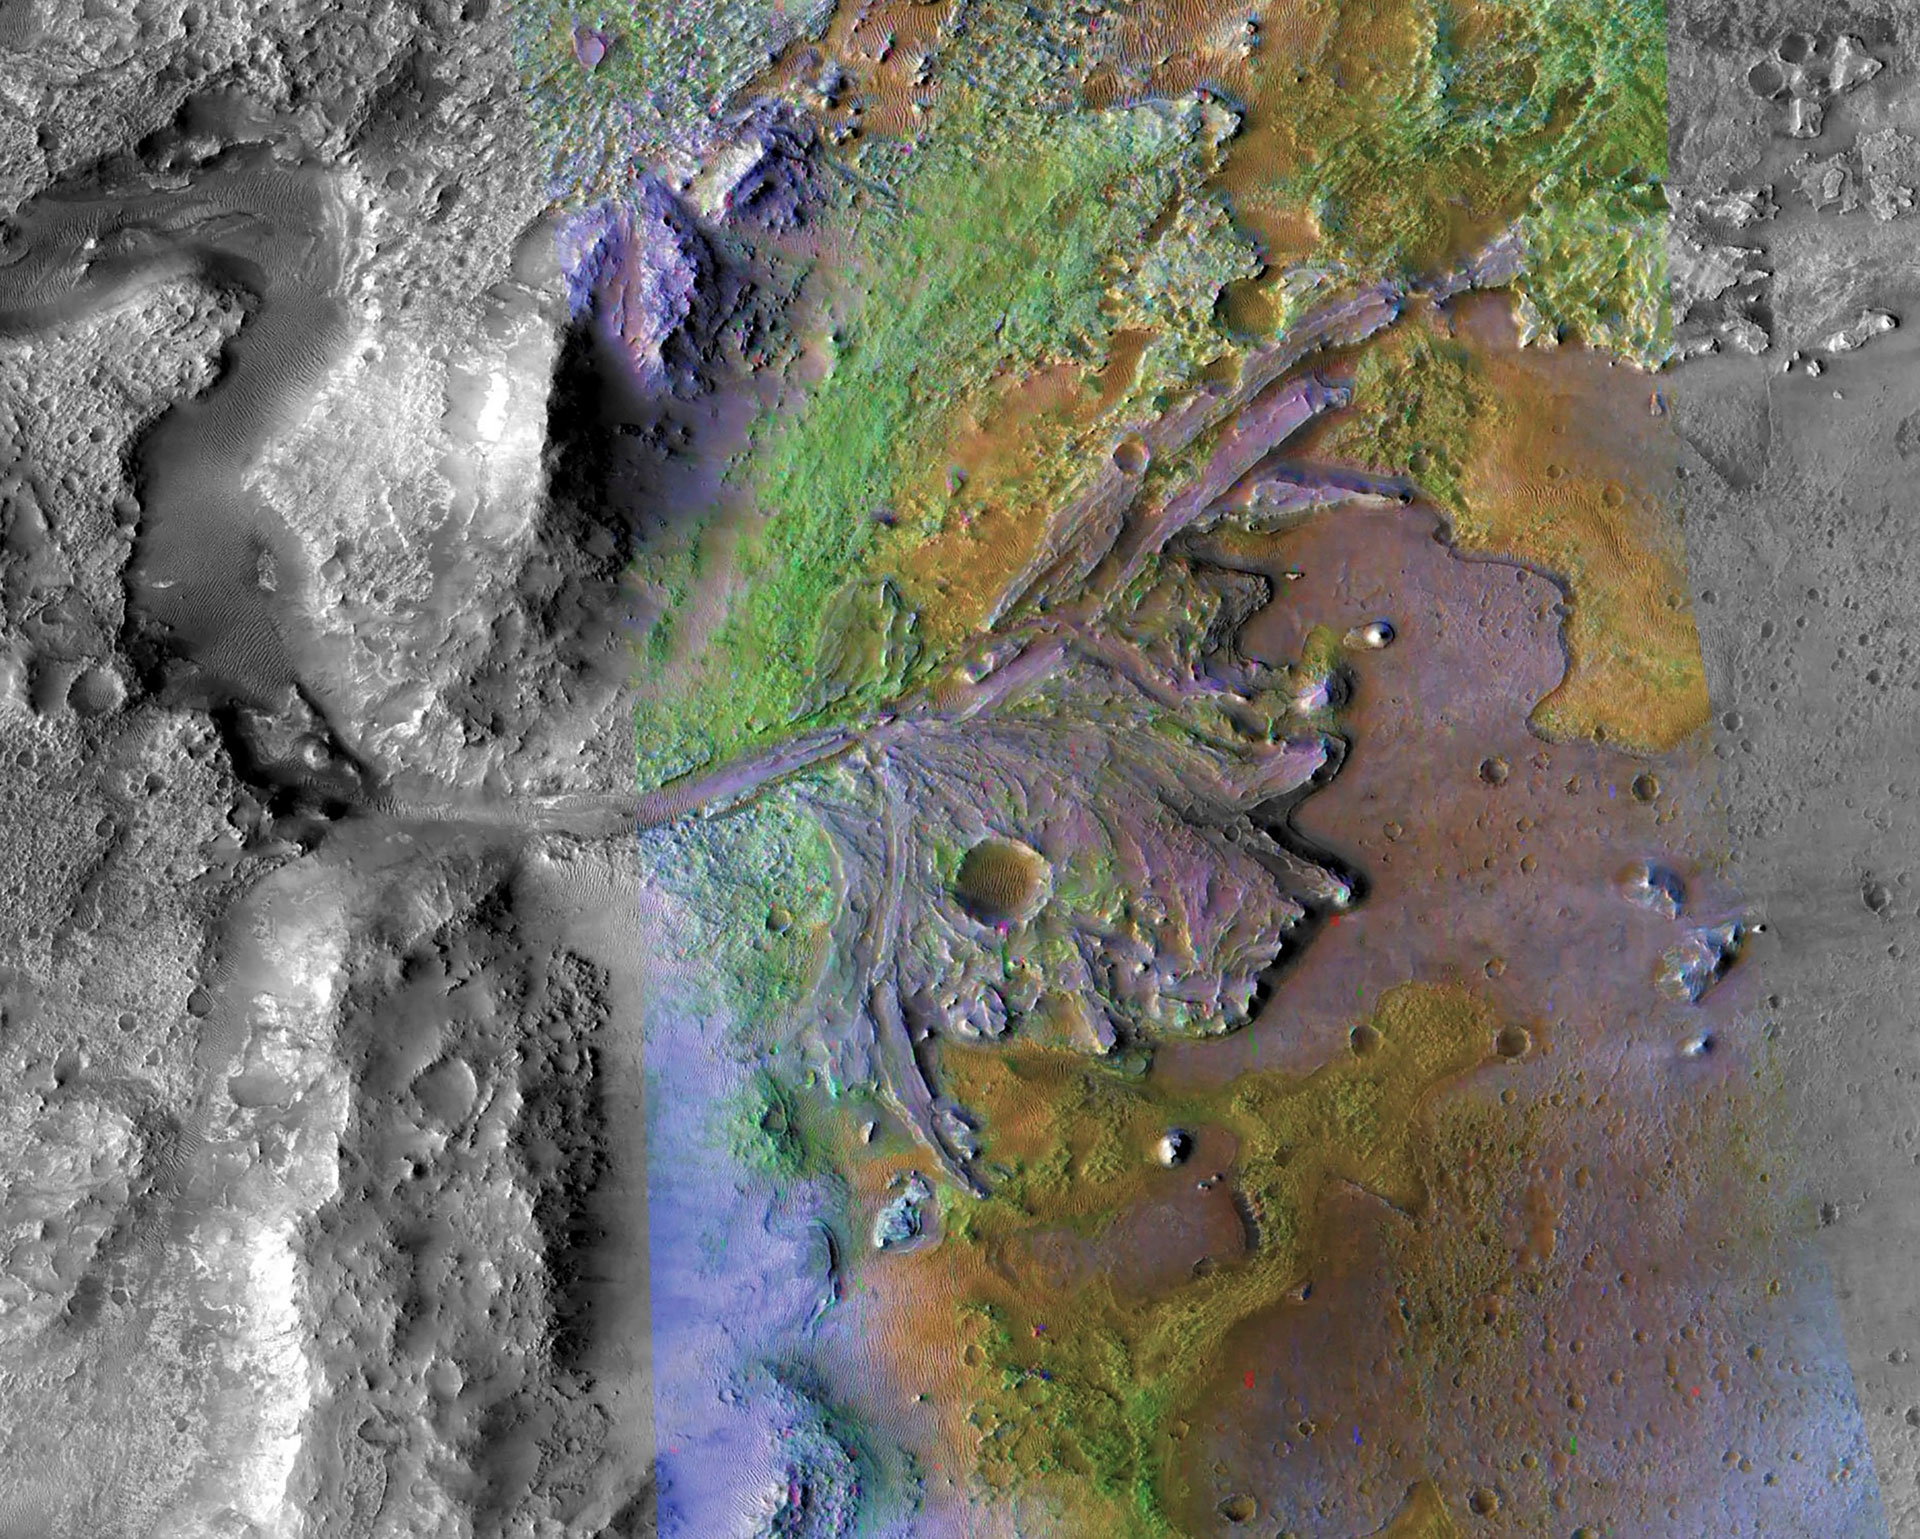 Podekscytowanie poszukiwaniem życia na Marsie wzrosło po odkryciu radaru penetrującego ziemię przez łazik Perseverance